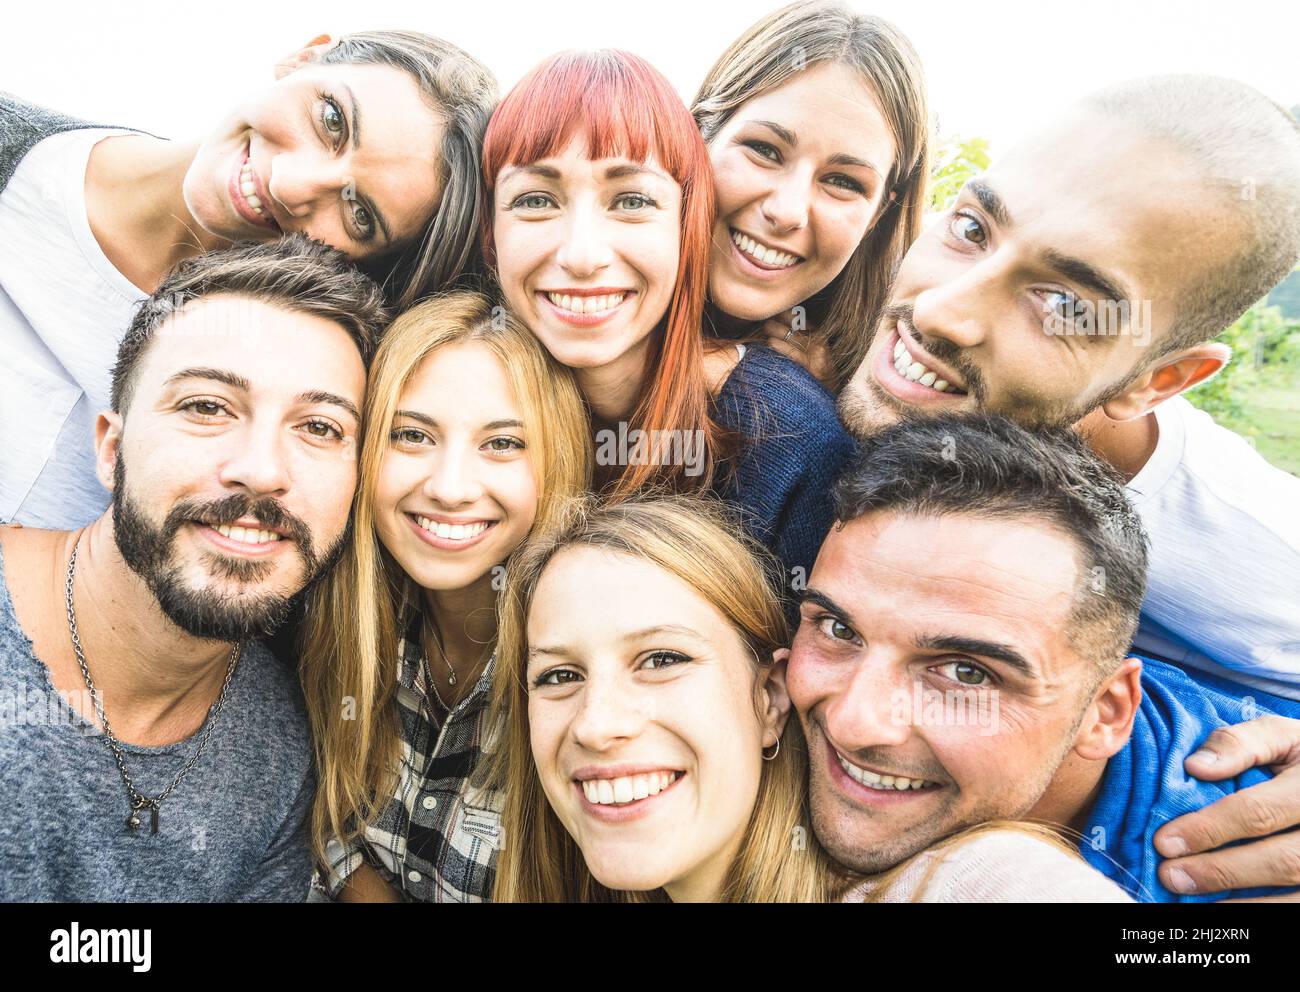 I migliori amici felici che prendono selfie all'aperto con retroilluminazione desaturata - concetto di amicizia e gioventù con i giovani che si divertono insieme Foto Stock